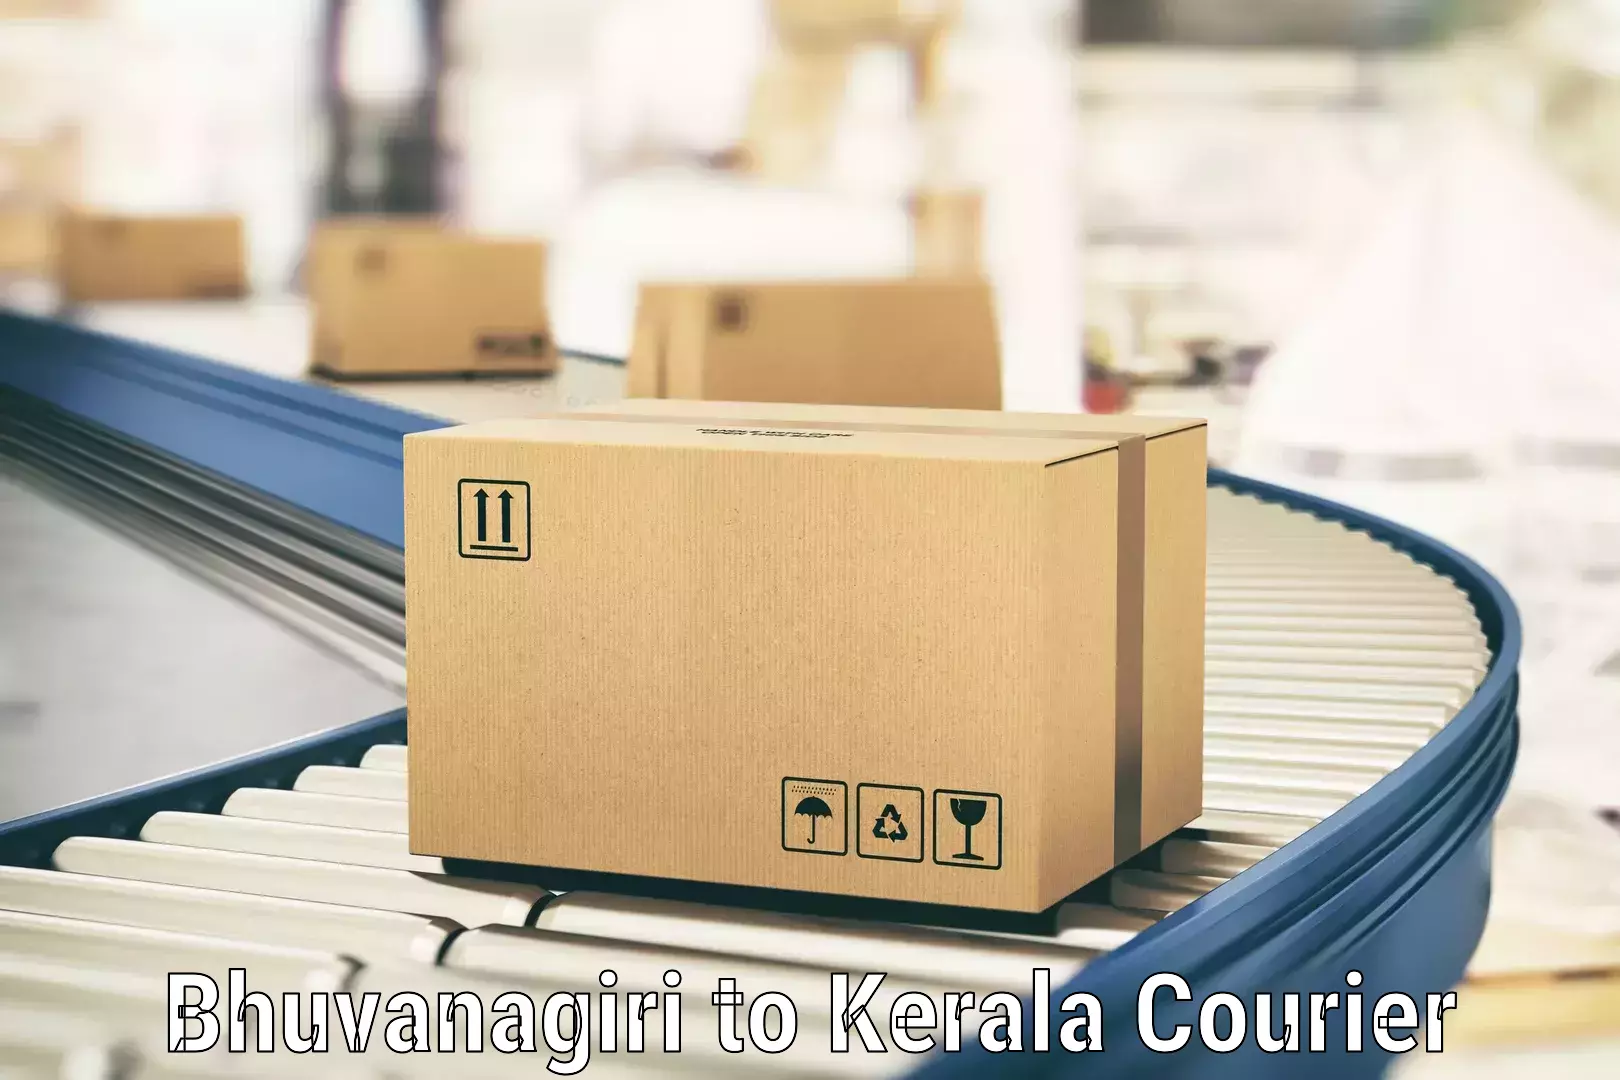 Customer-oriented courier services Bhuvanagiri to Kakkur